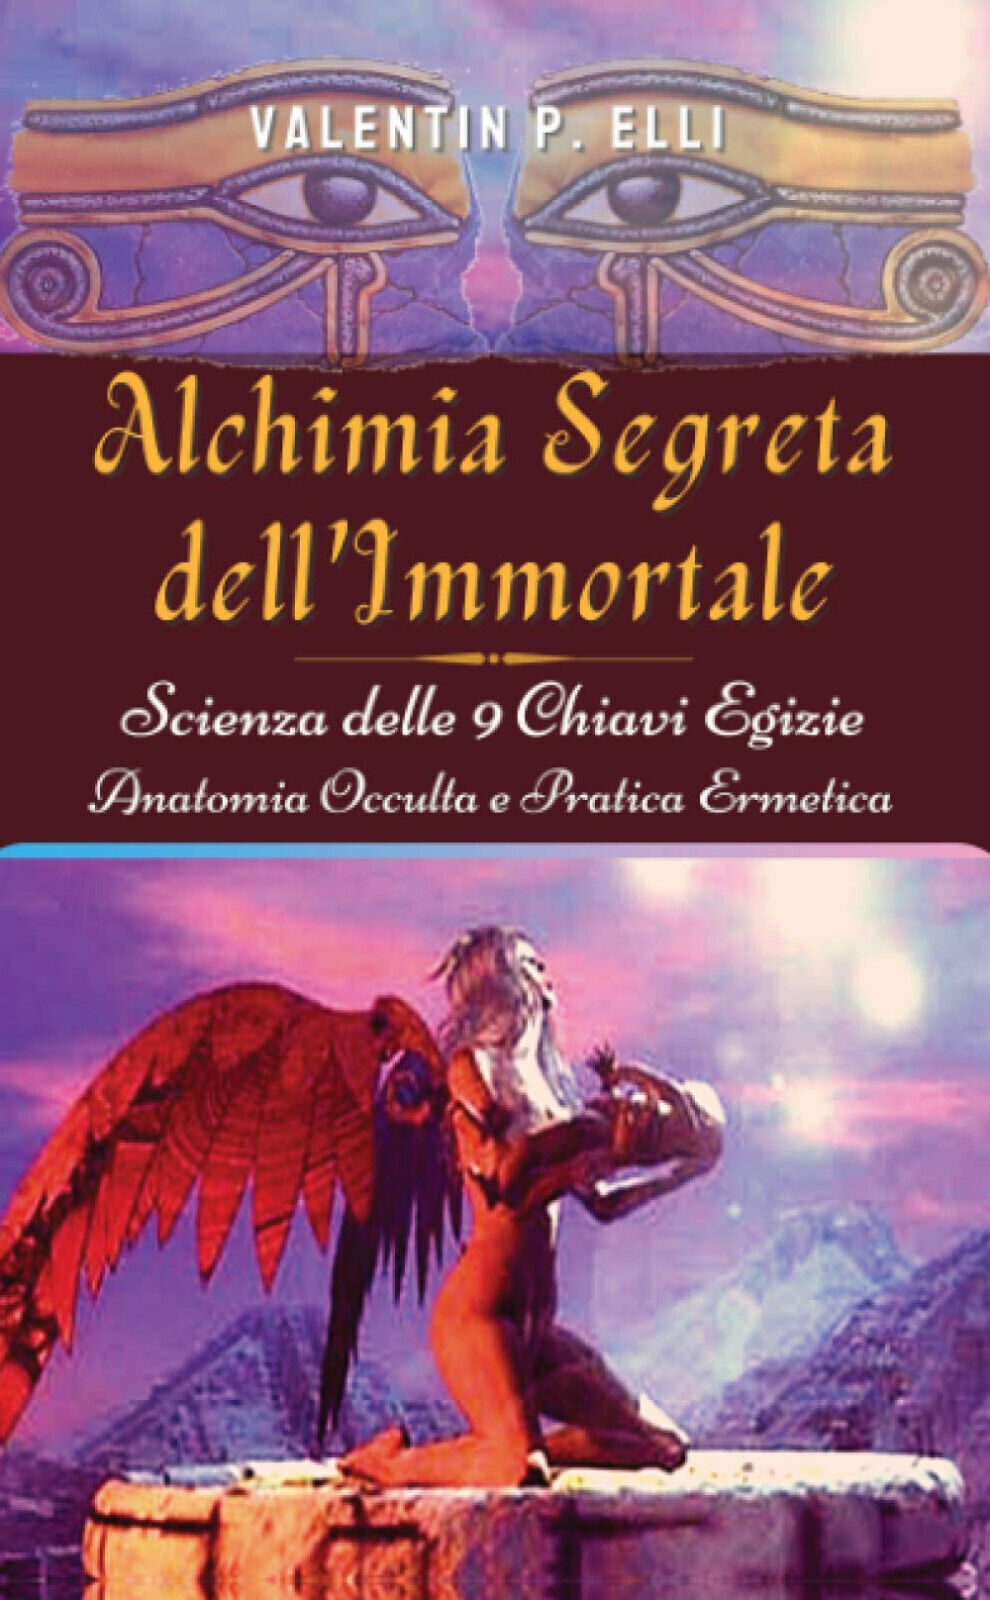 Alchimia Segreta dell'Immortale - Valentin P. Elli - StreetLib, 2020 libro usato